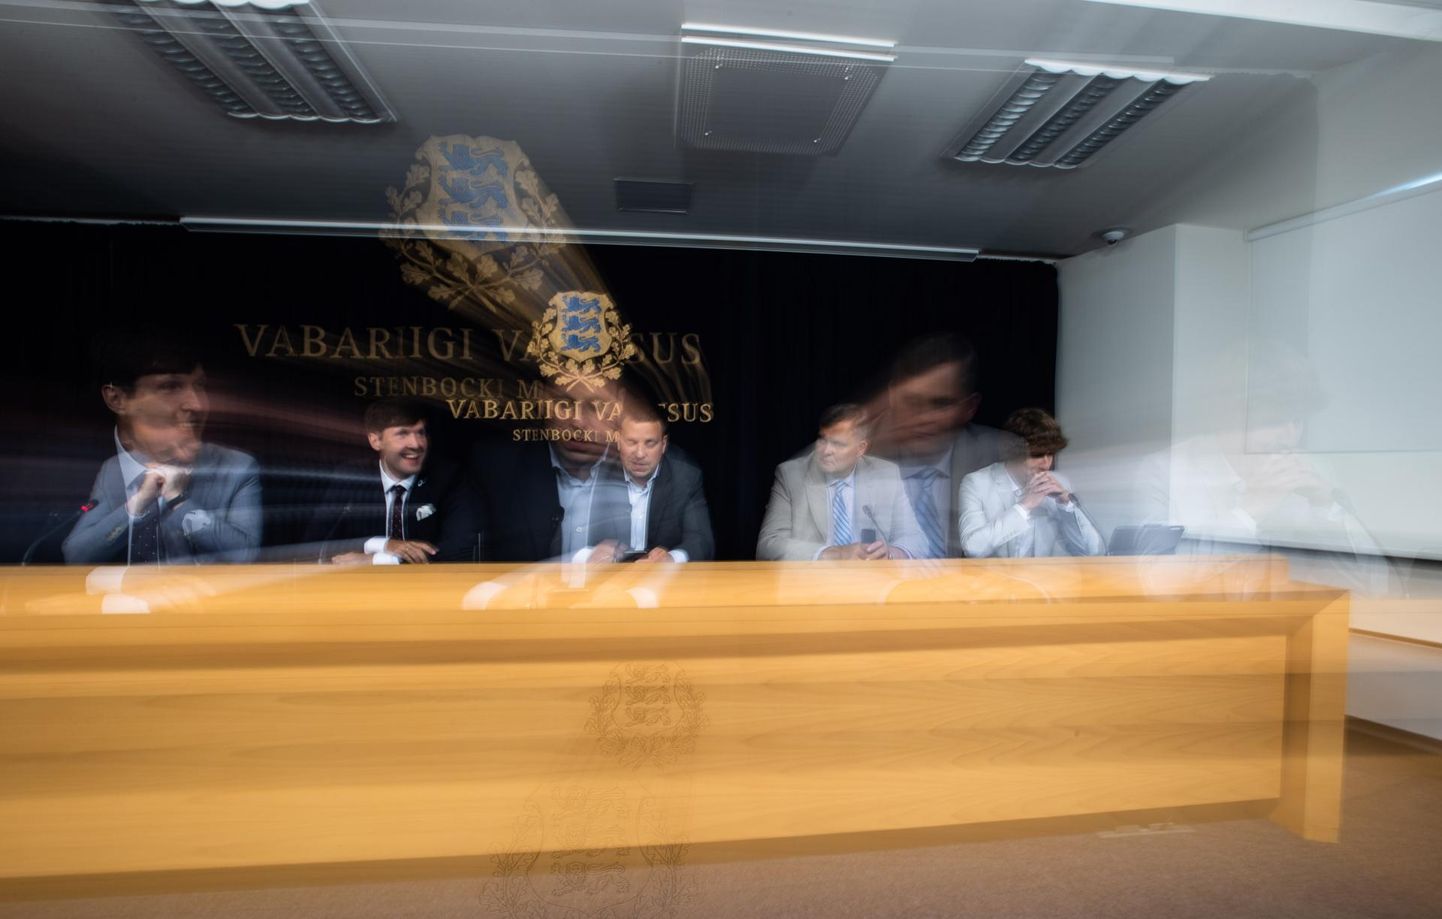 Valitsus uuendas karantiini reguleeriva korralduse kehtivust. Foto valitsuse pressikonverentsilt, kus osalesid Jüri Ratas, Martin Helme, Raivo Aeg ja Tanel Kiik. 